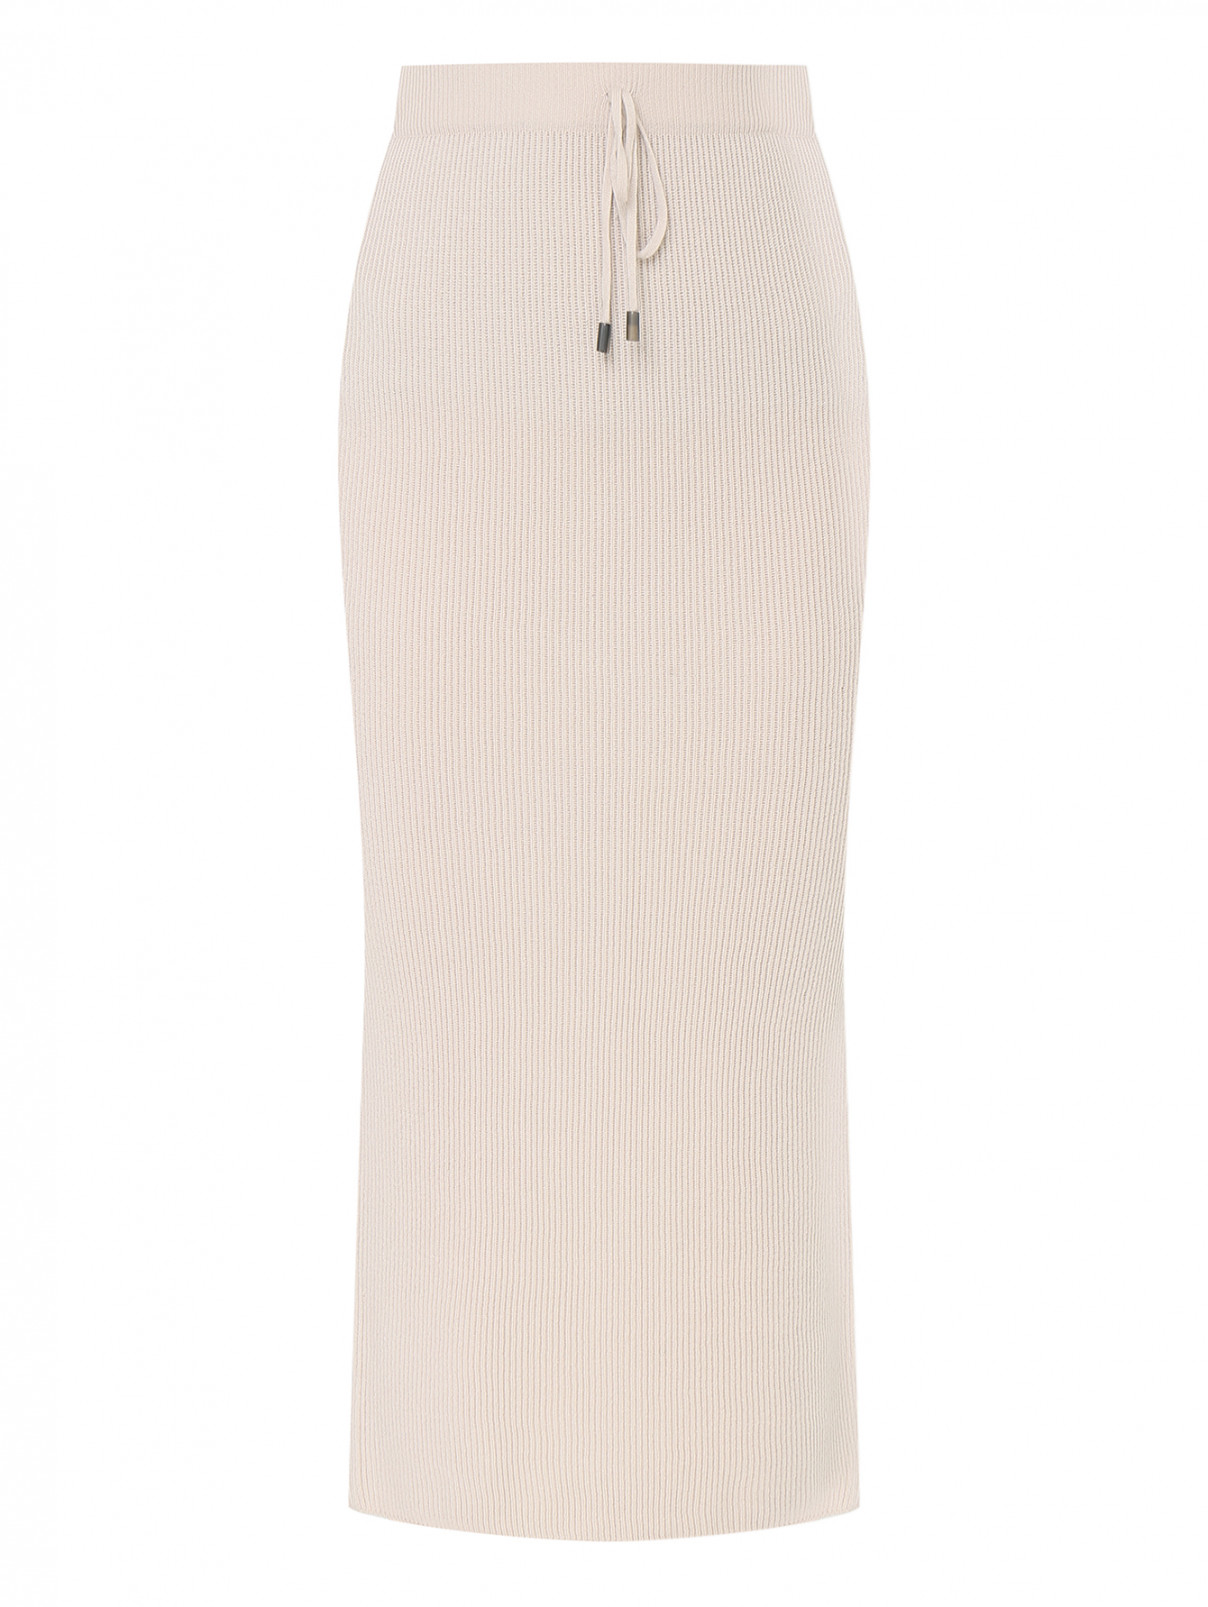 Трикотажная юбка в рубчик Bruno Manetti  –  Общий вид  – Цвет:  Бежевый